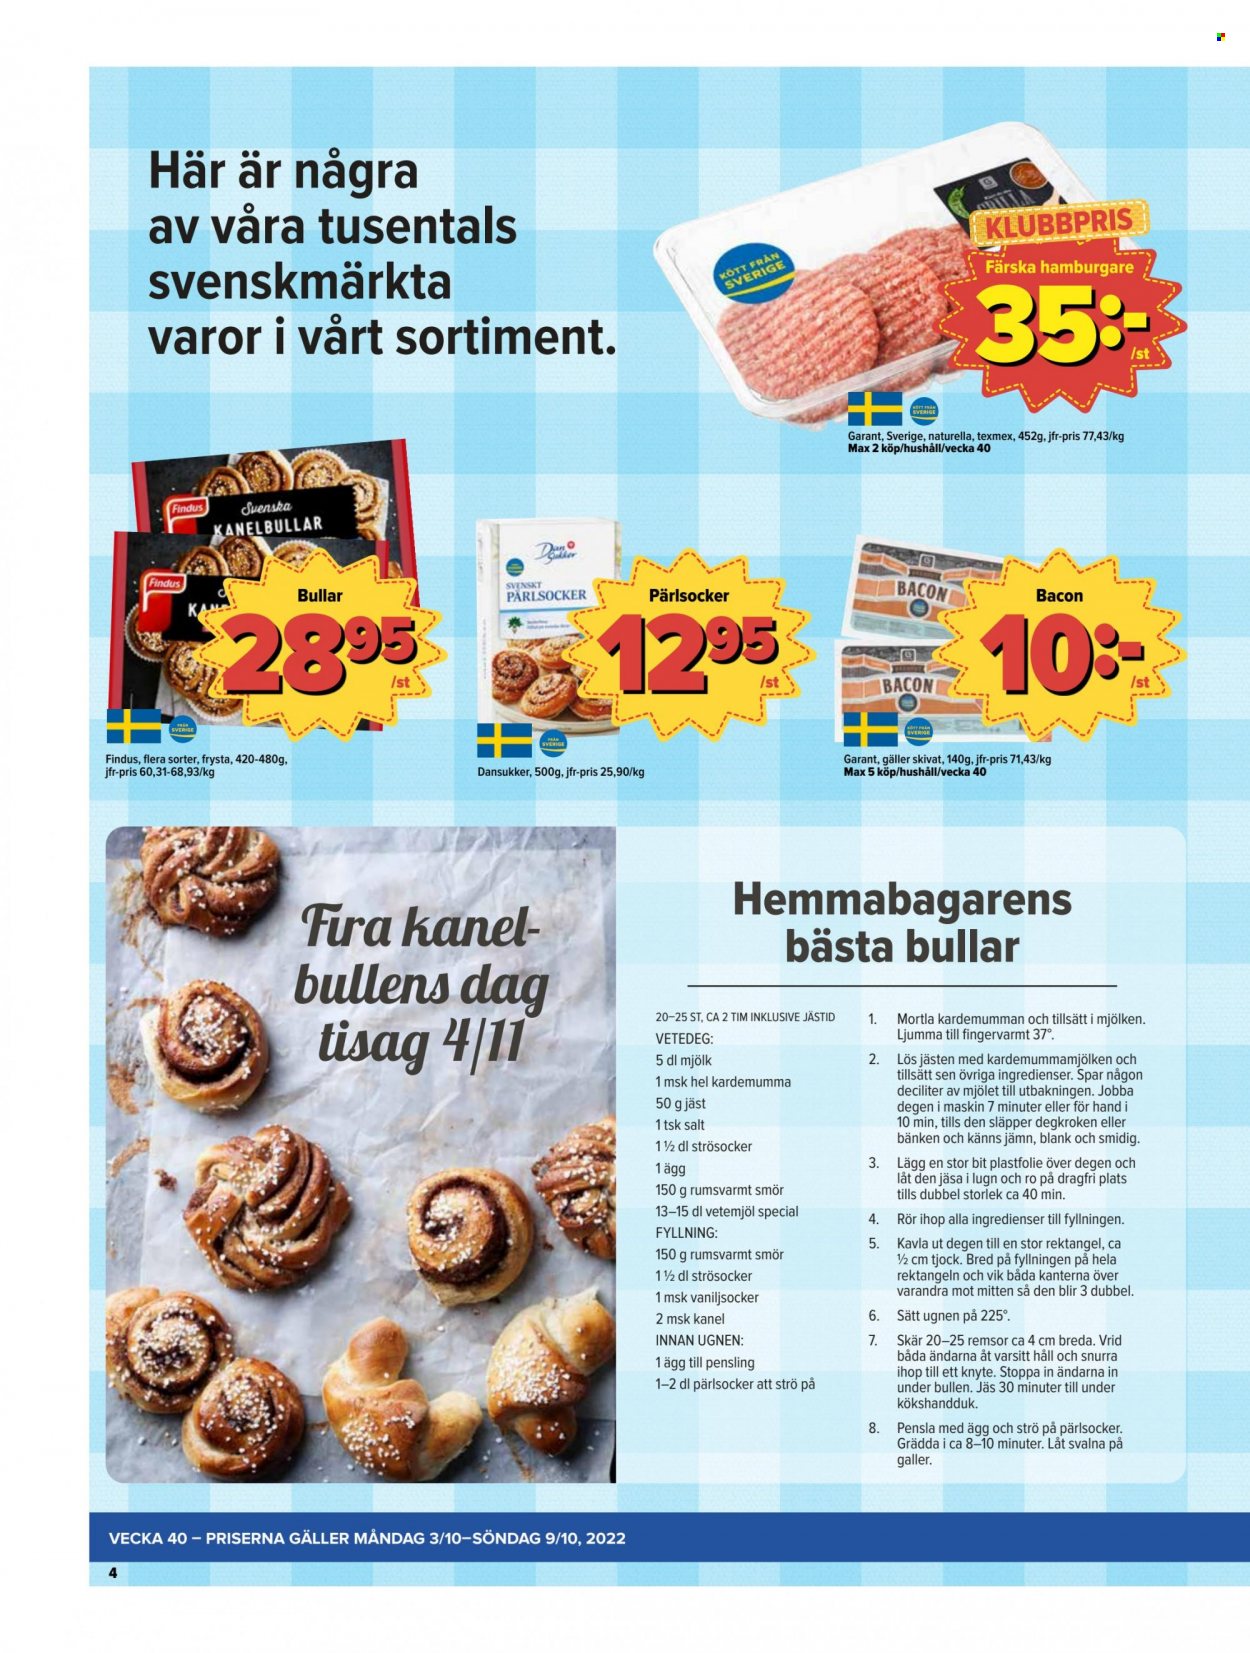 thumbnail - Östenssons reklamblad - 3/10 2022 - 9/10 2022 - varor från reklamblad - kanelbullar, vetemjöl, hamburgare, bacon, mjölk, jäst, smör, Findus, salt, plastfolie. Sida 4.